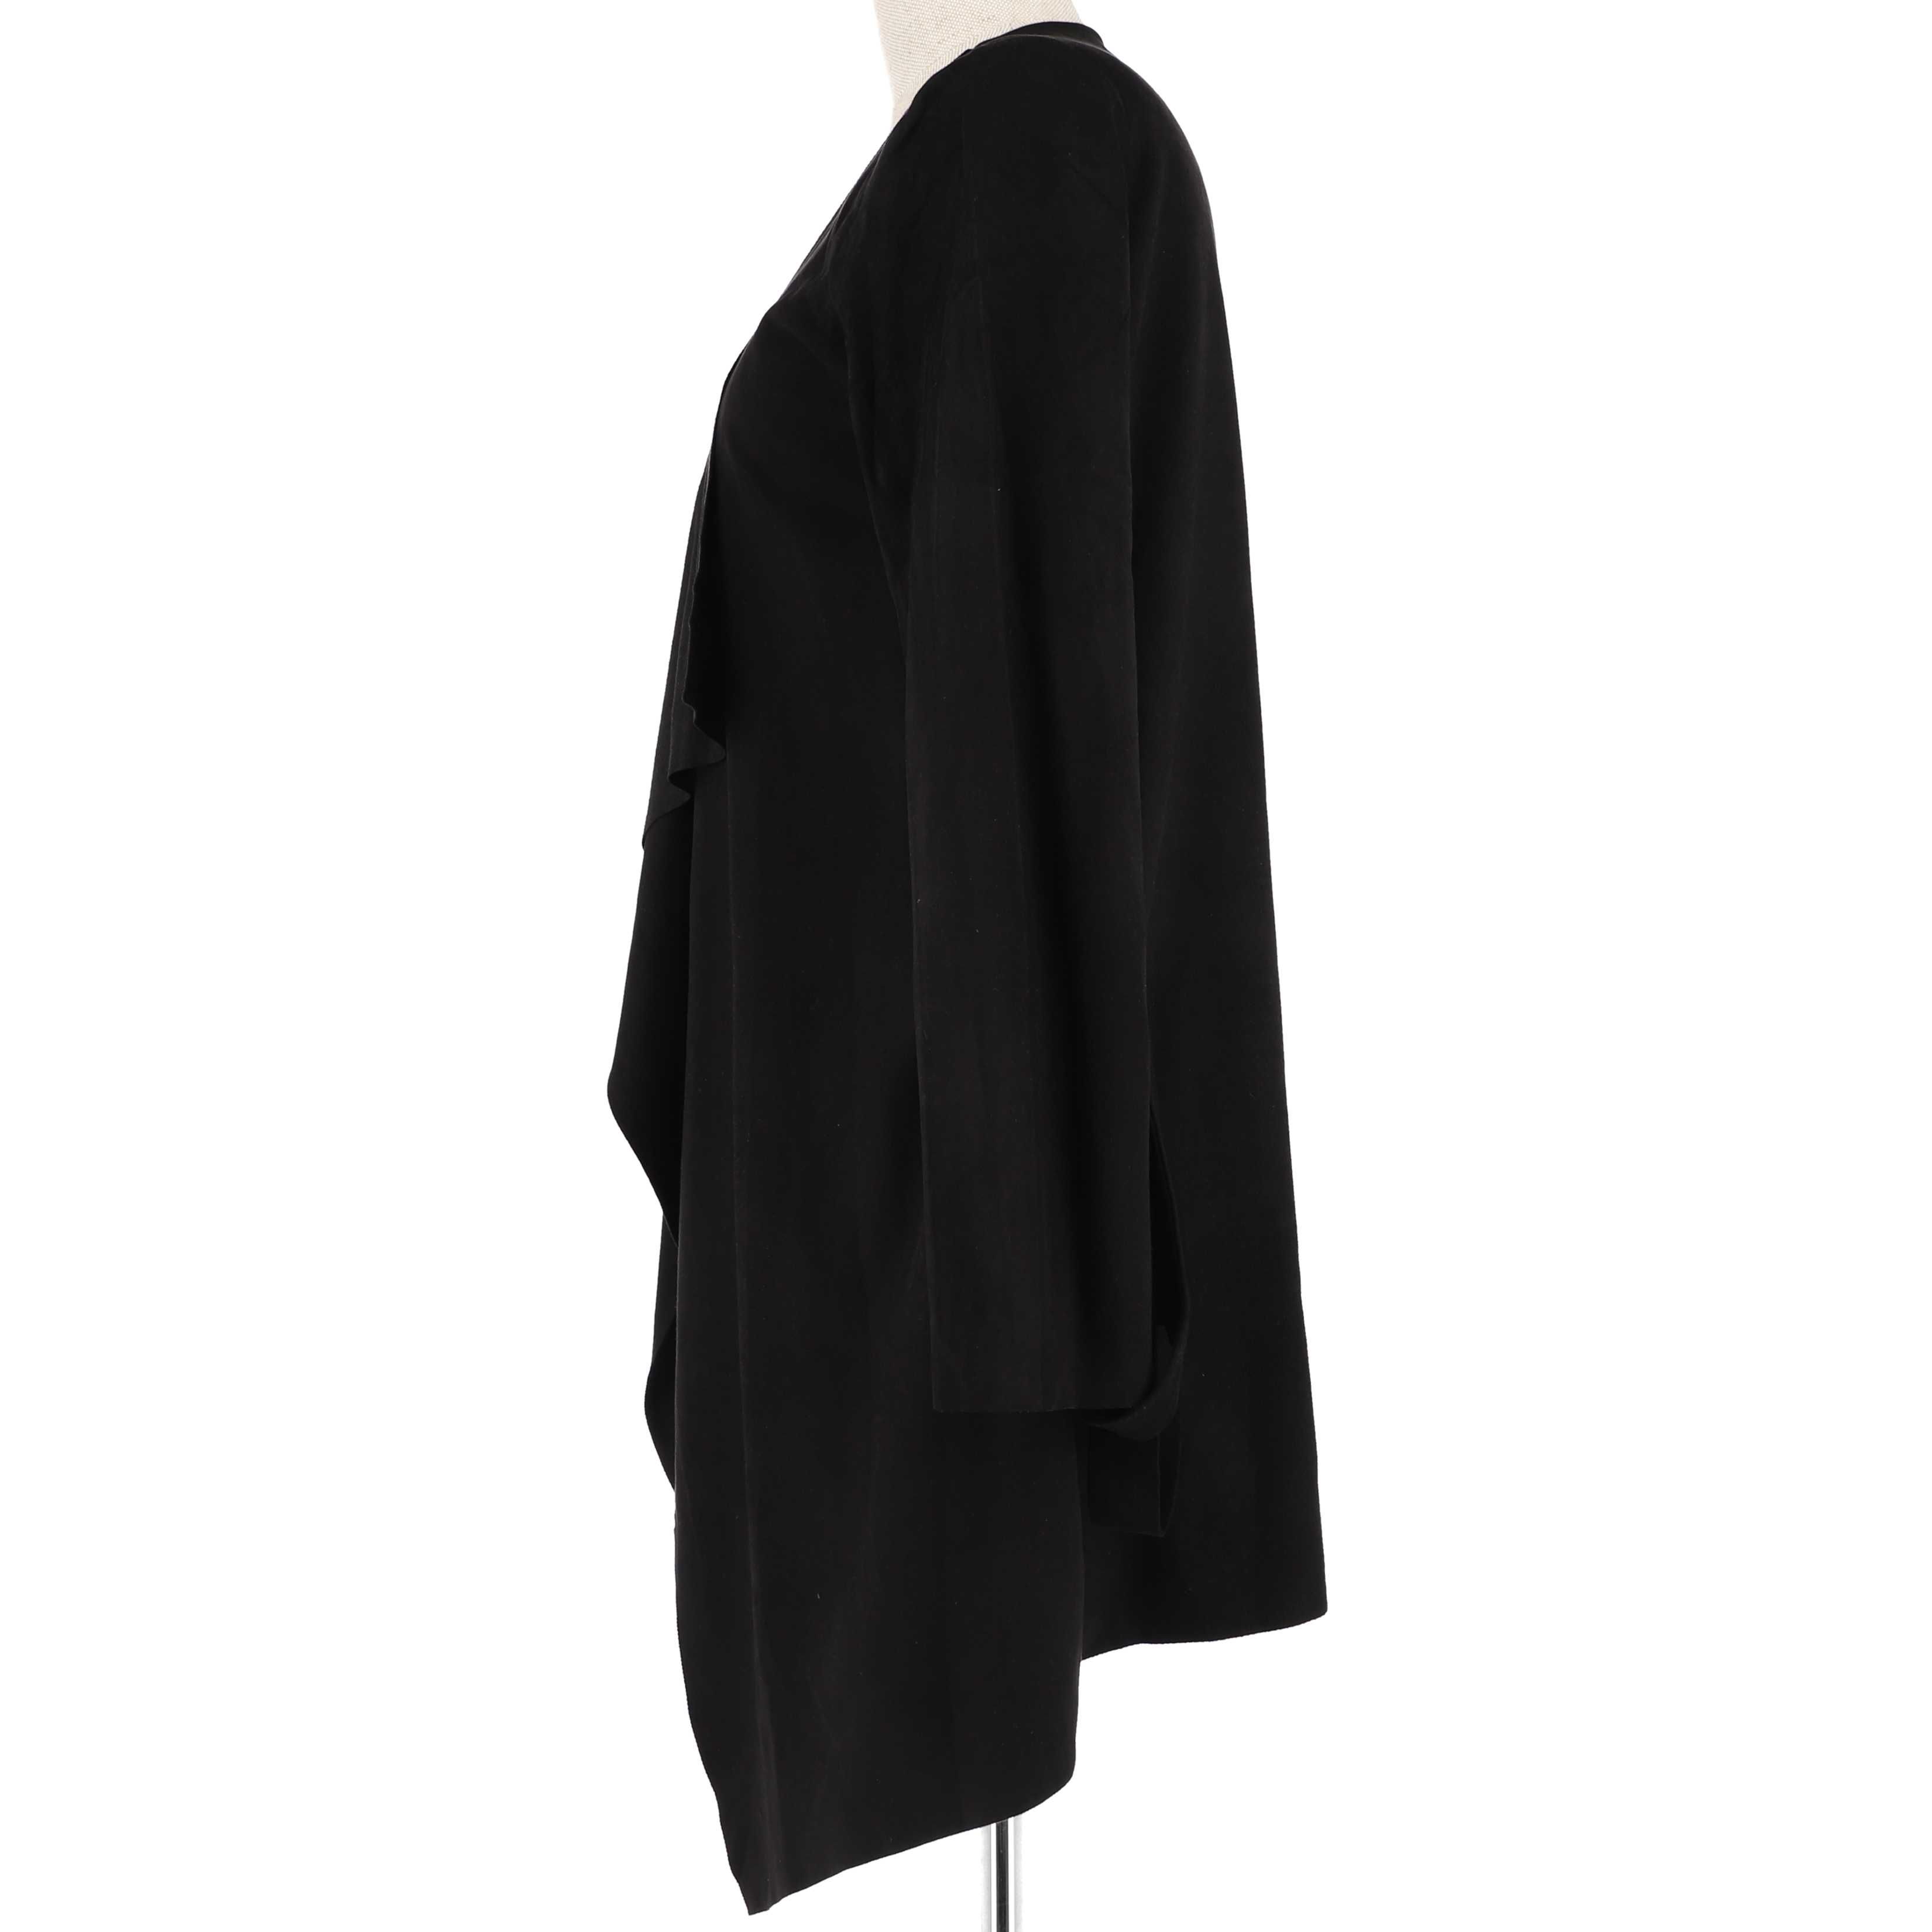 Żakiet, blezer, kardigan w kolorze czarnym marki Mohito, rozmiar 40